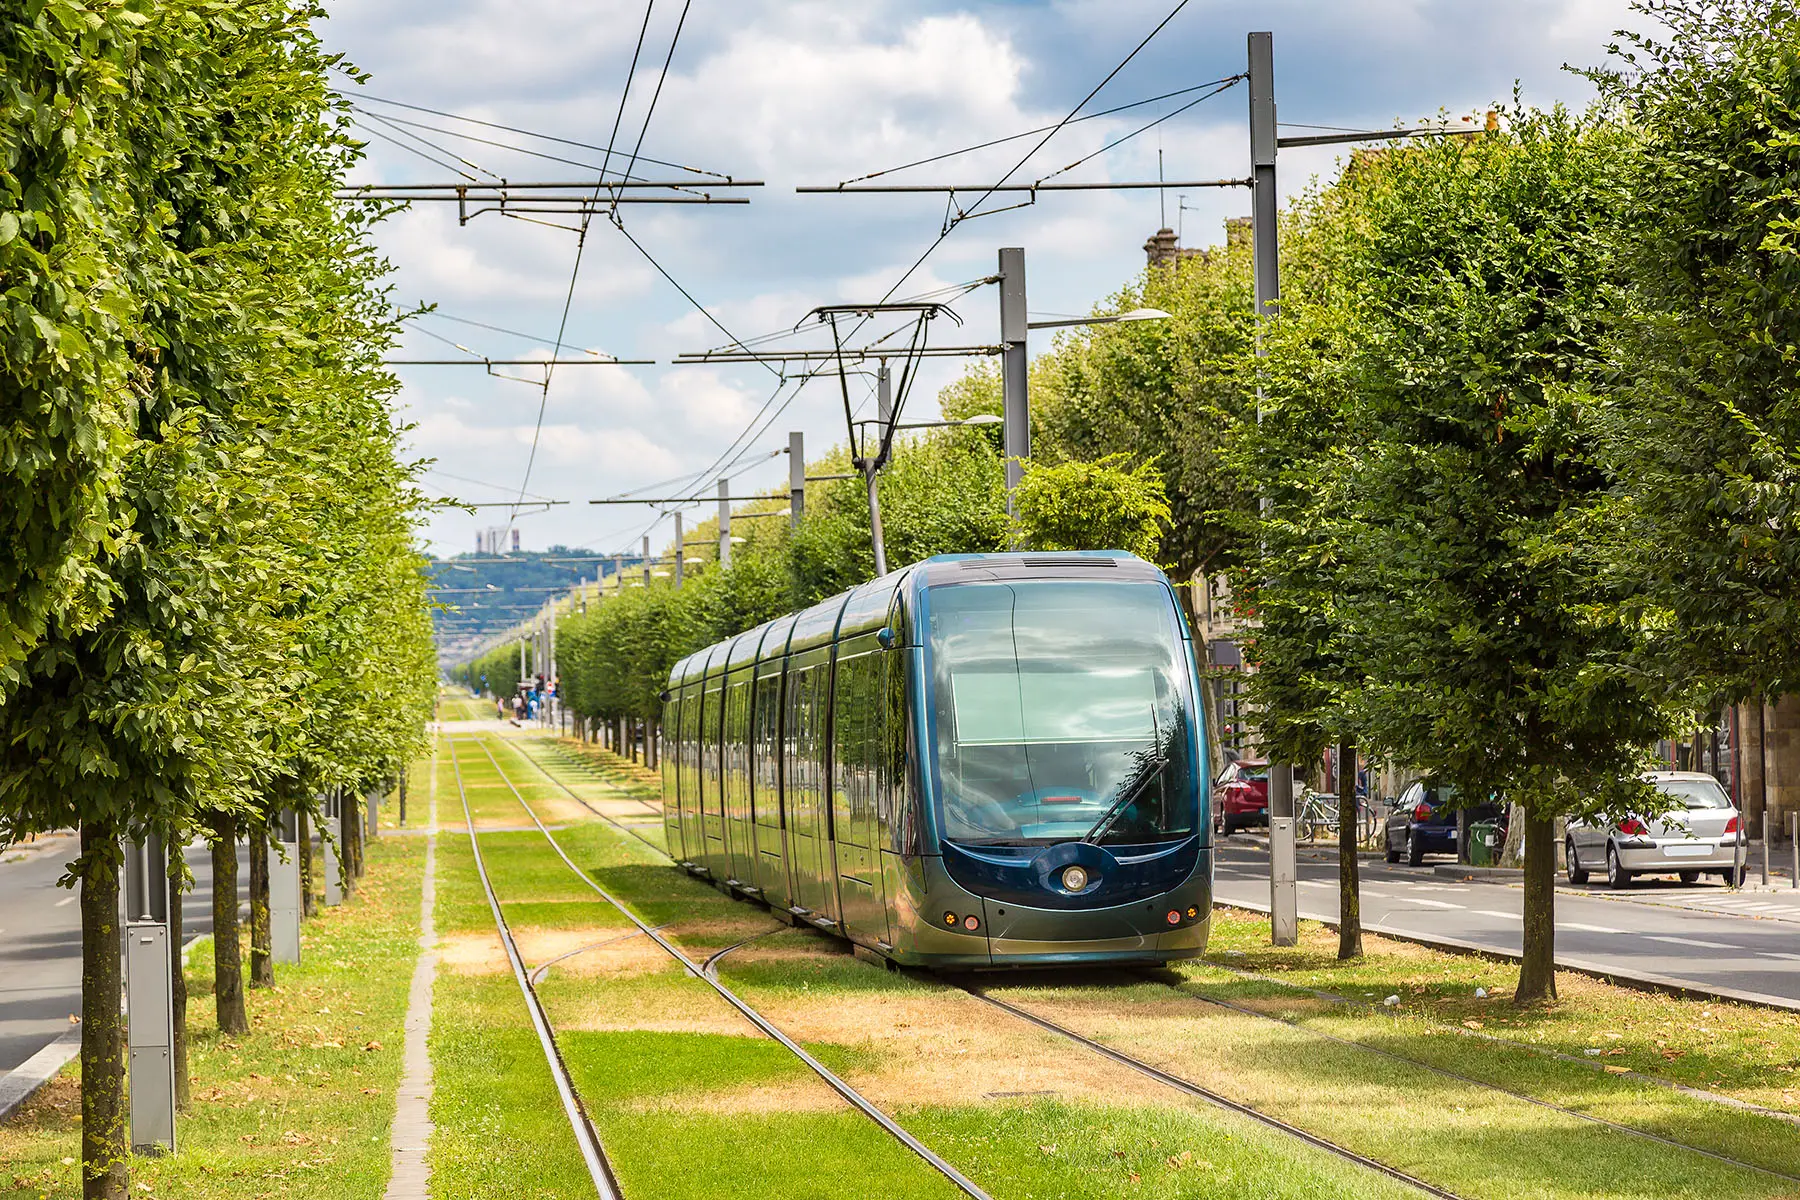 A tram in Bordeaux, France